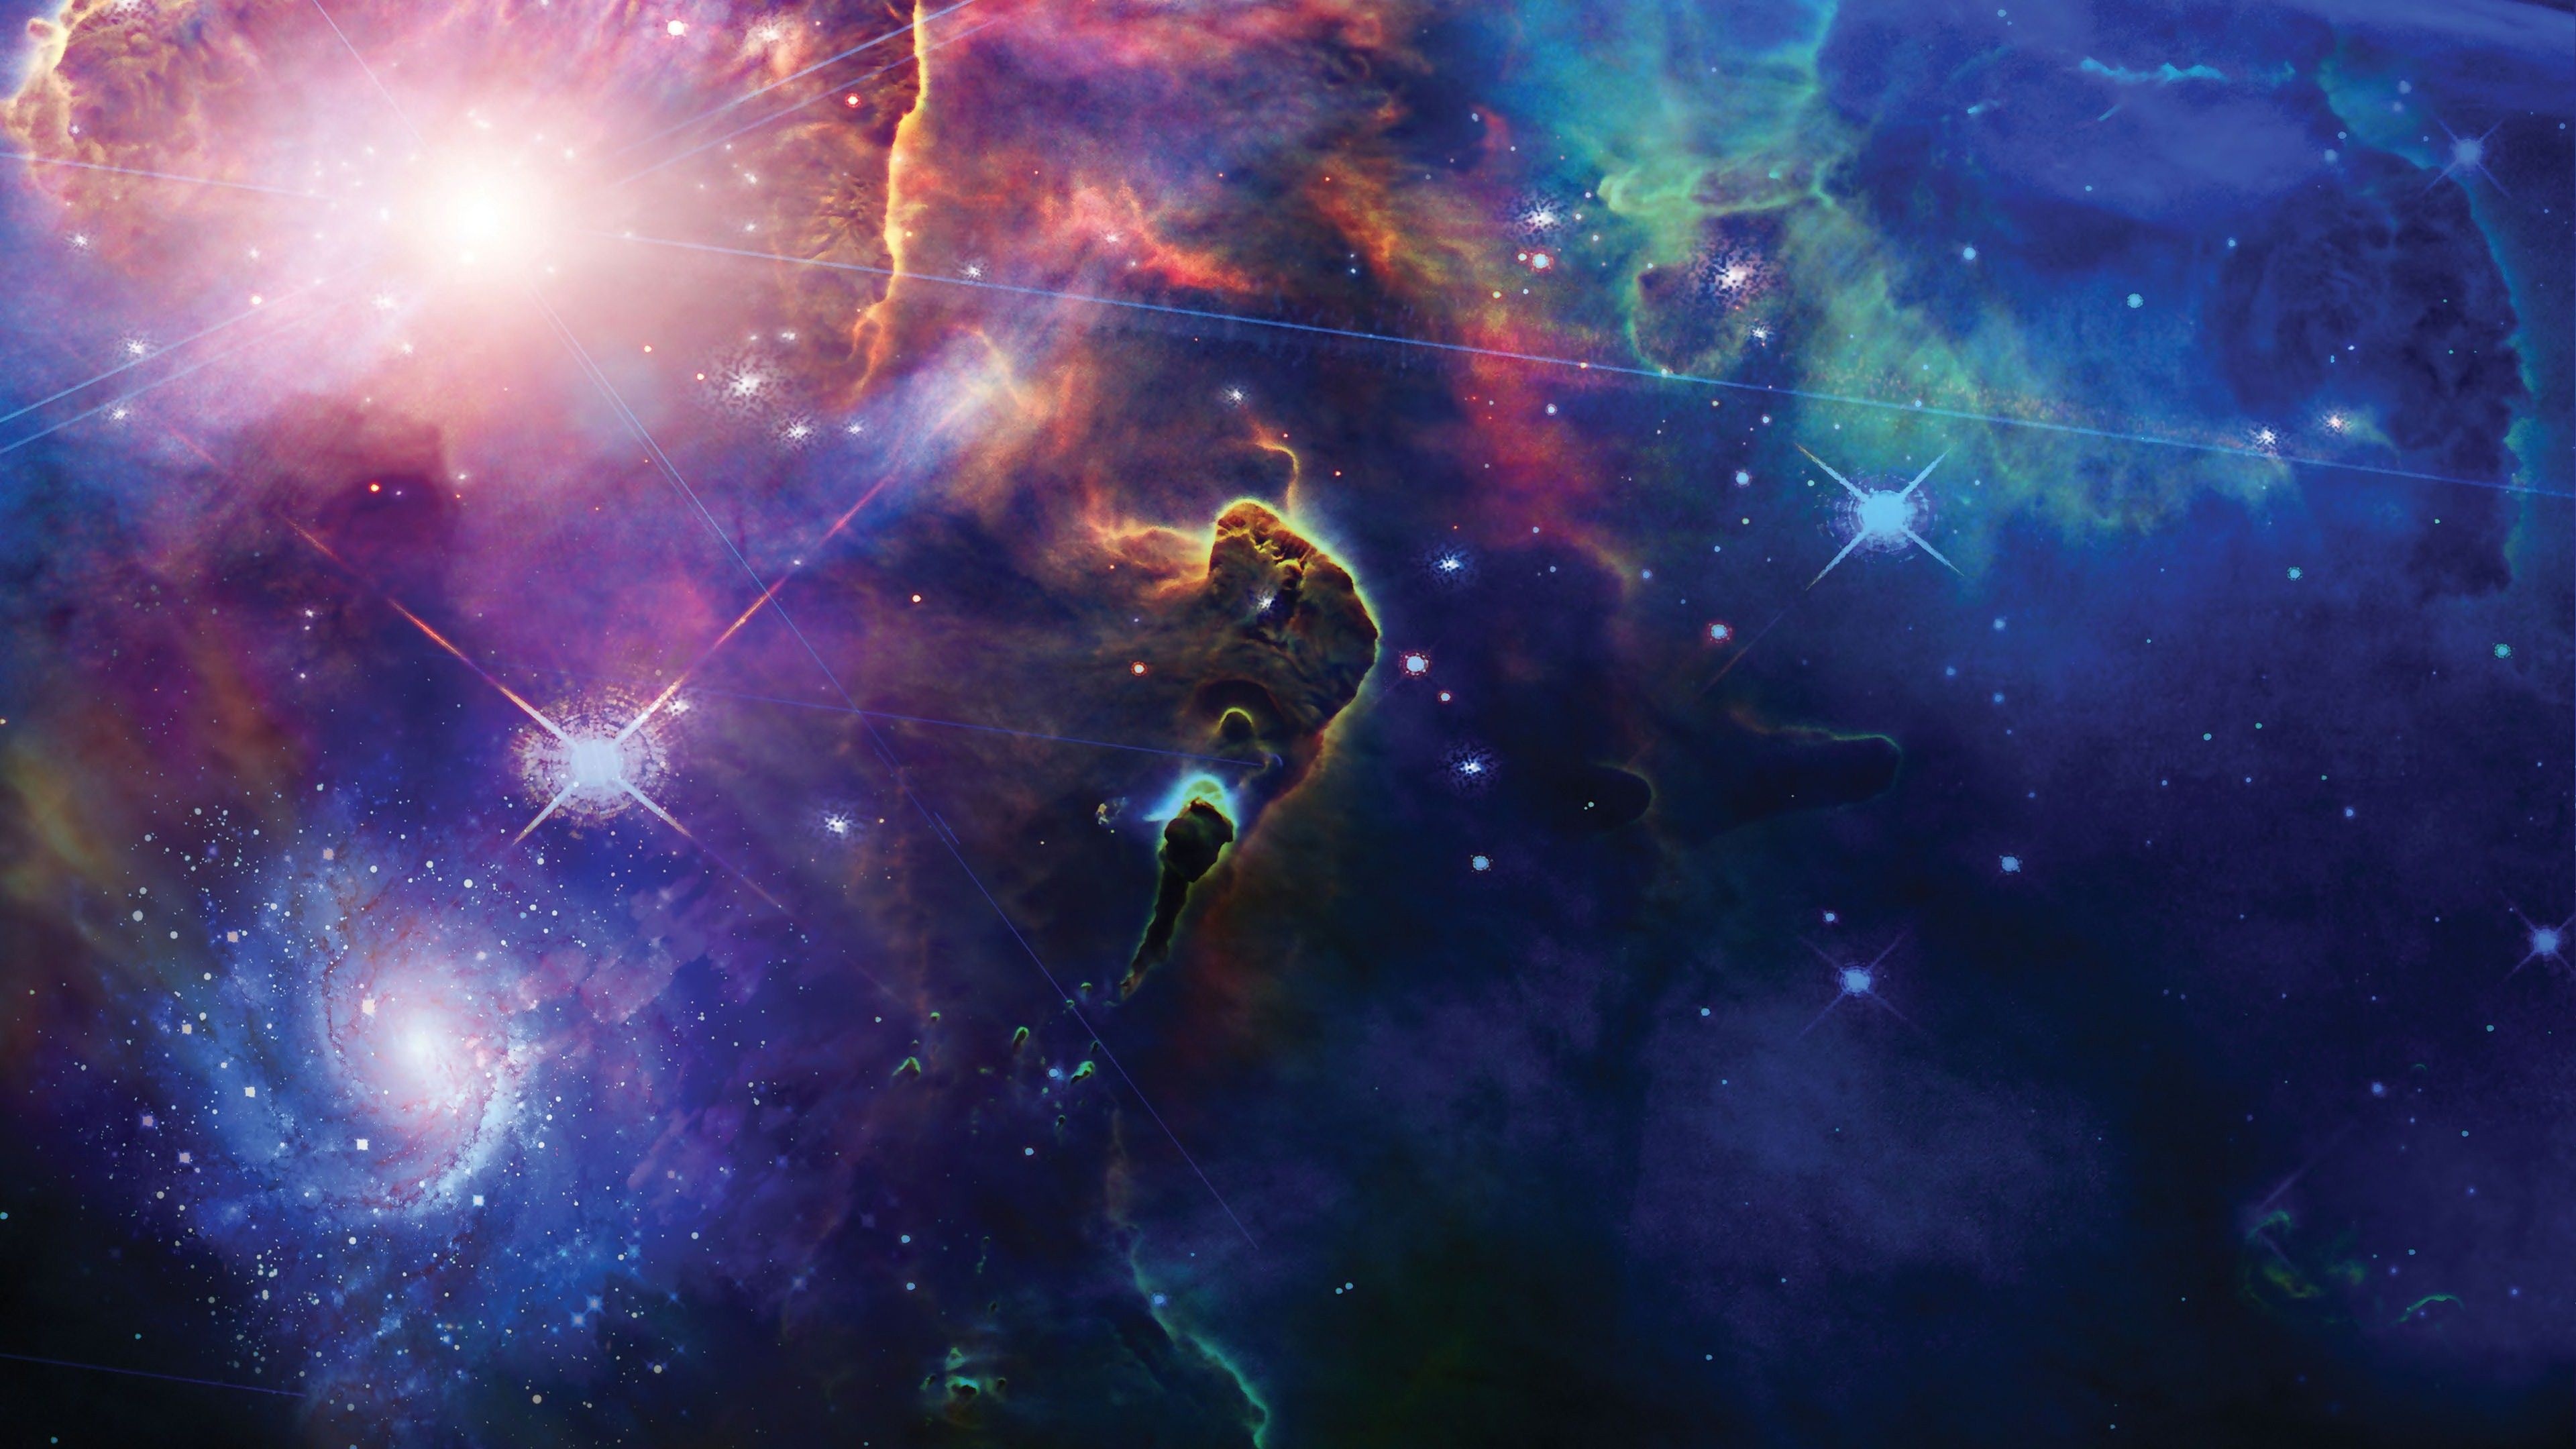 Hubble images, Nebula wallpapers, Deep space exploration, Astronomical wonders, 3840x2160 4K Desktop